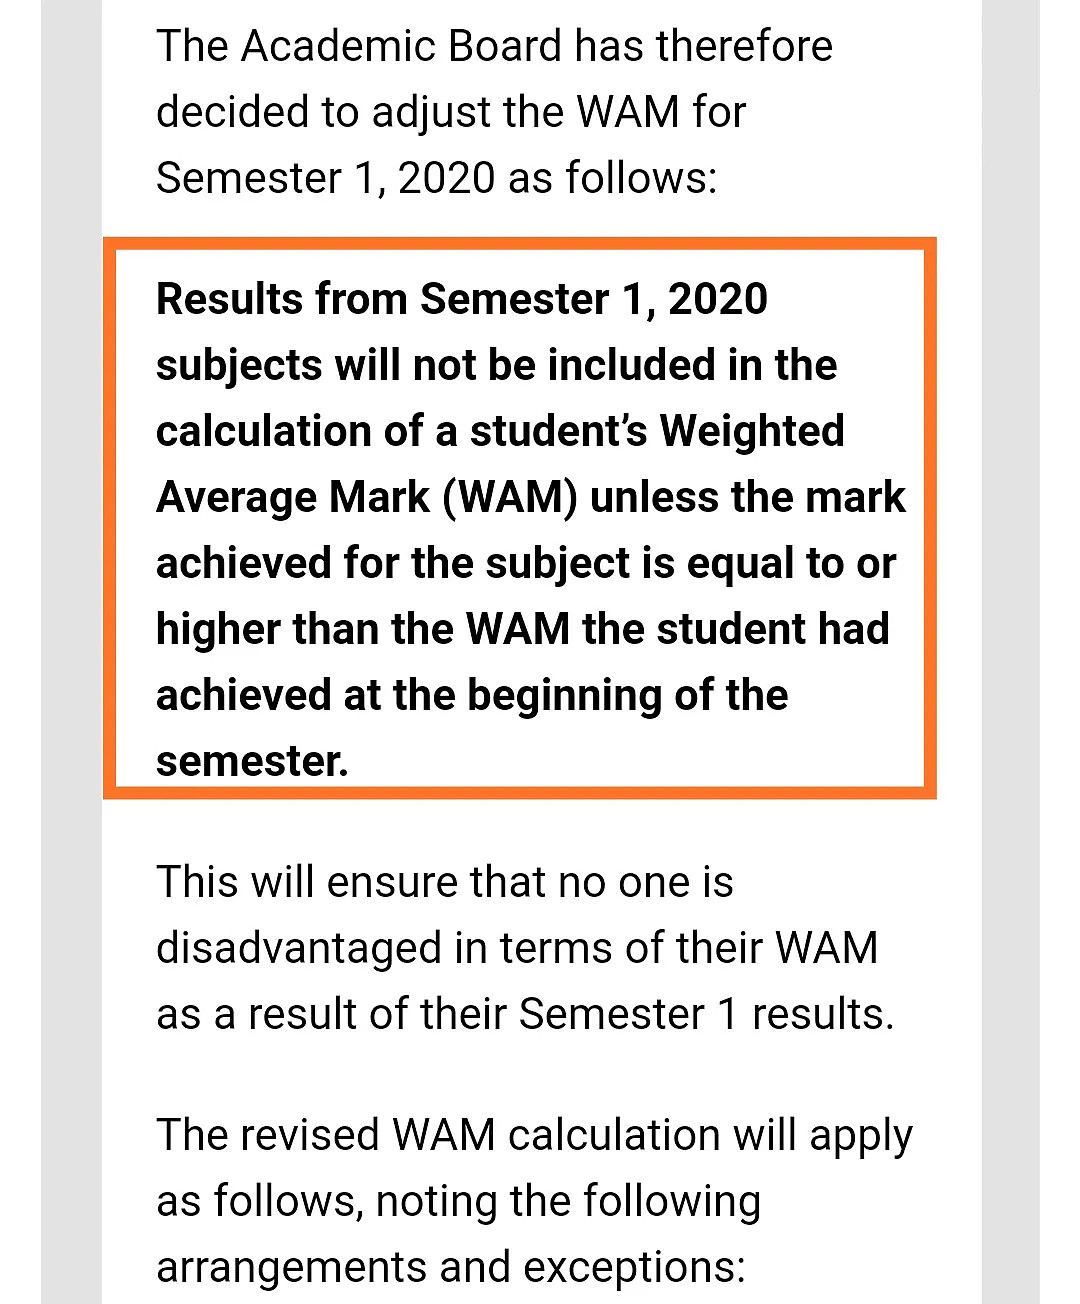 墨大发邮件通知了，WAM算法调整，称会让所有同学满意！（组图） - 4